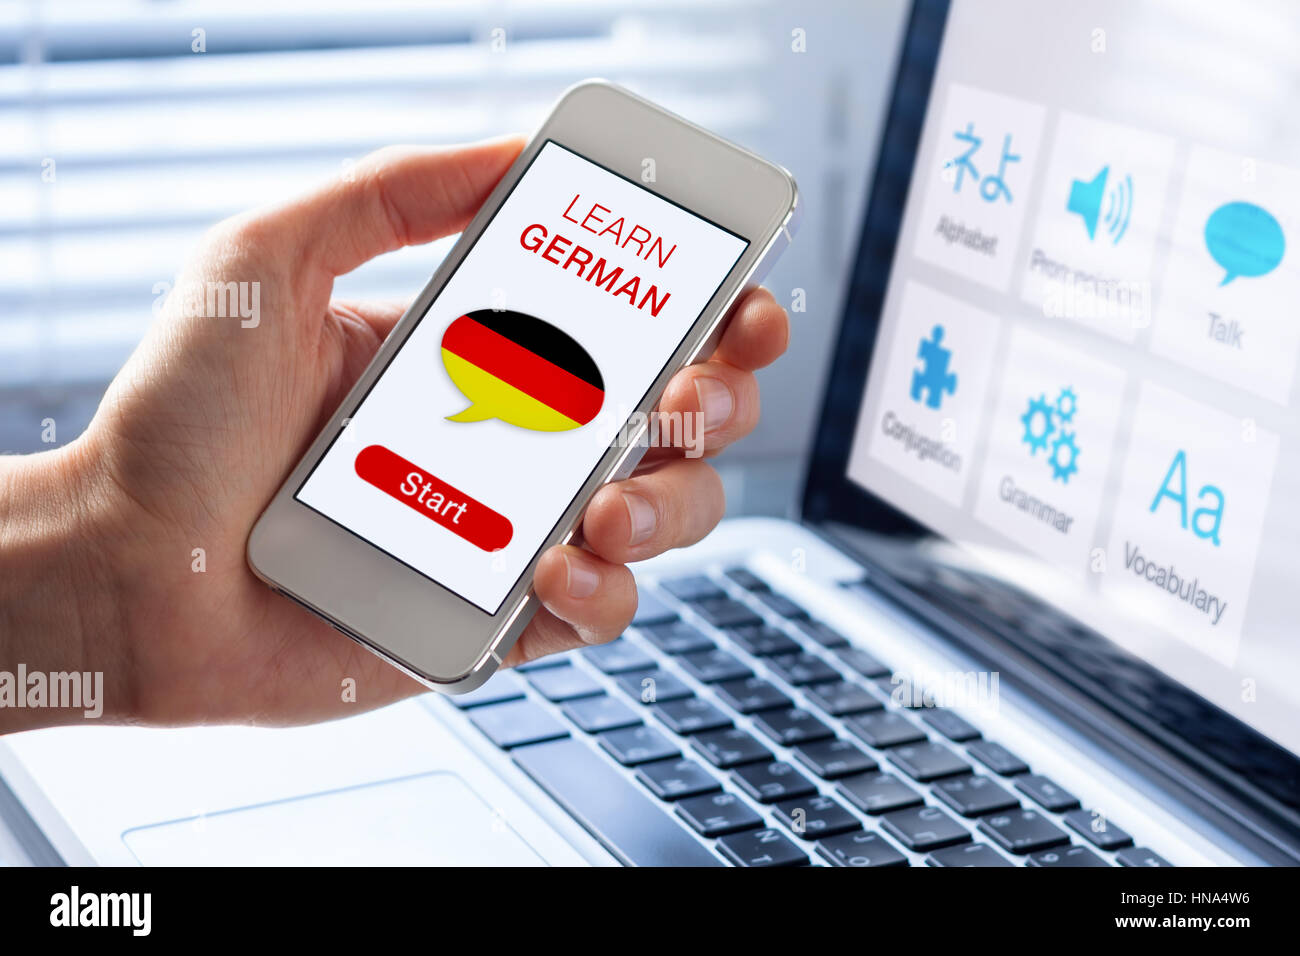 Aprender alemán online concepto con una persona que muestre el e-learning  app del teléfono móvil con el pabellón de Alemania Fotografía de stock -  Alamy